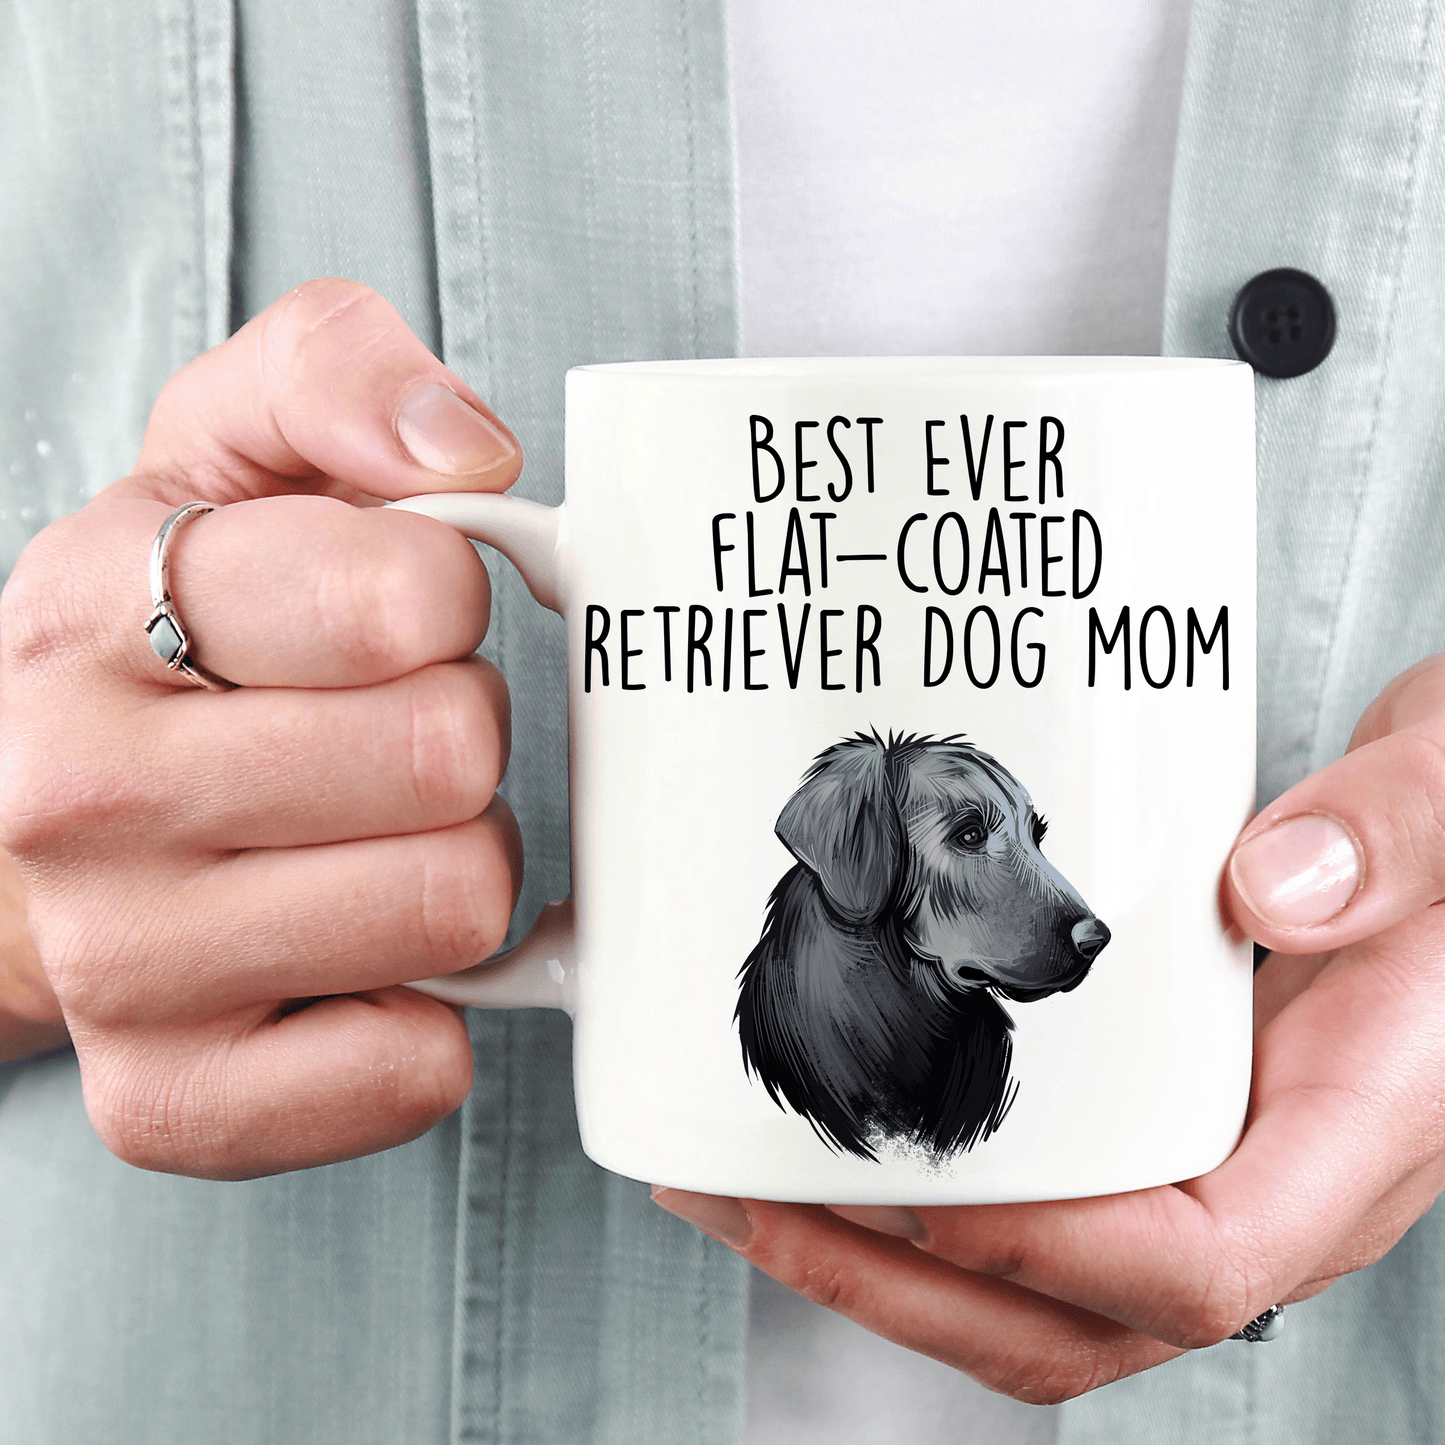 Best Ever Flat-Coated Retriever Dog Mom Ceramic Coffee Mug